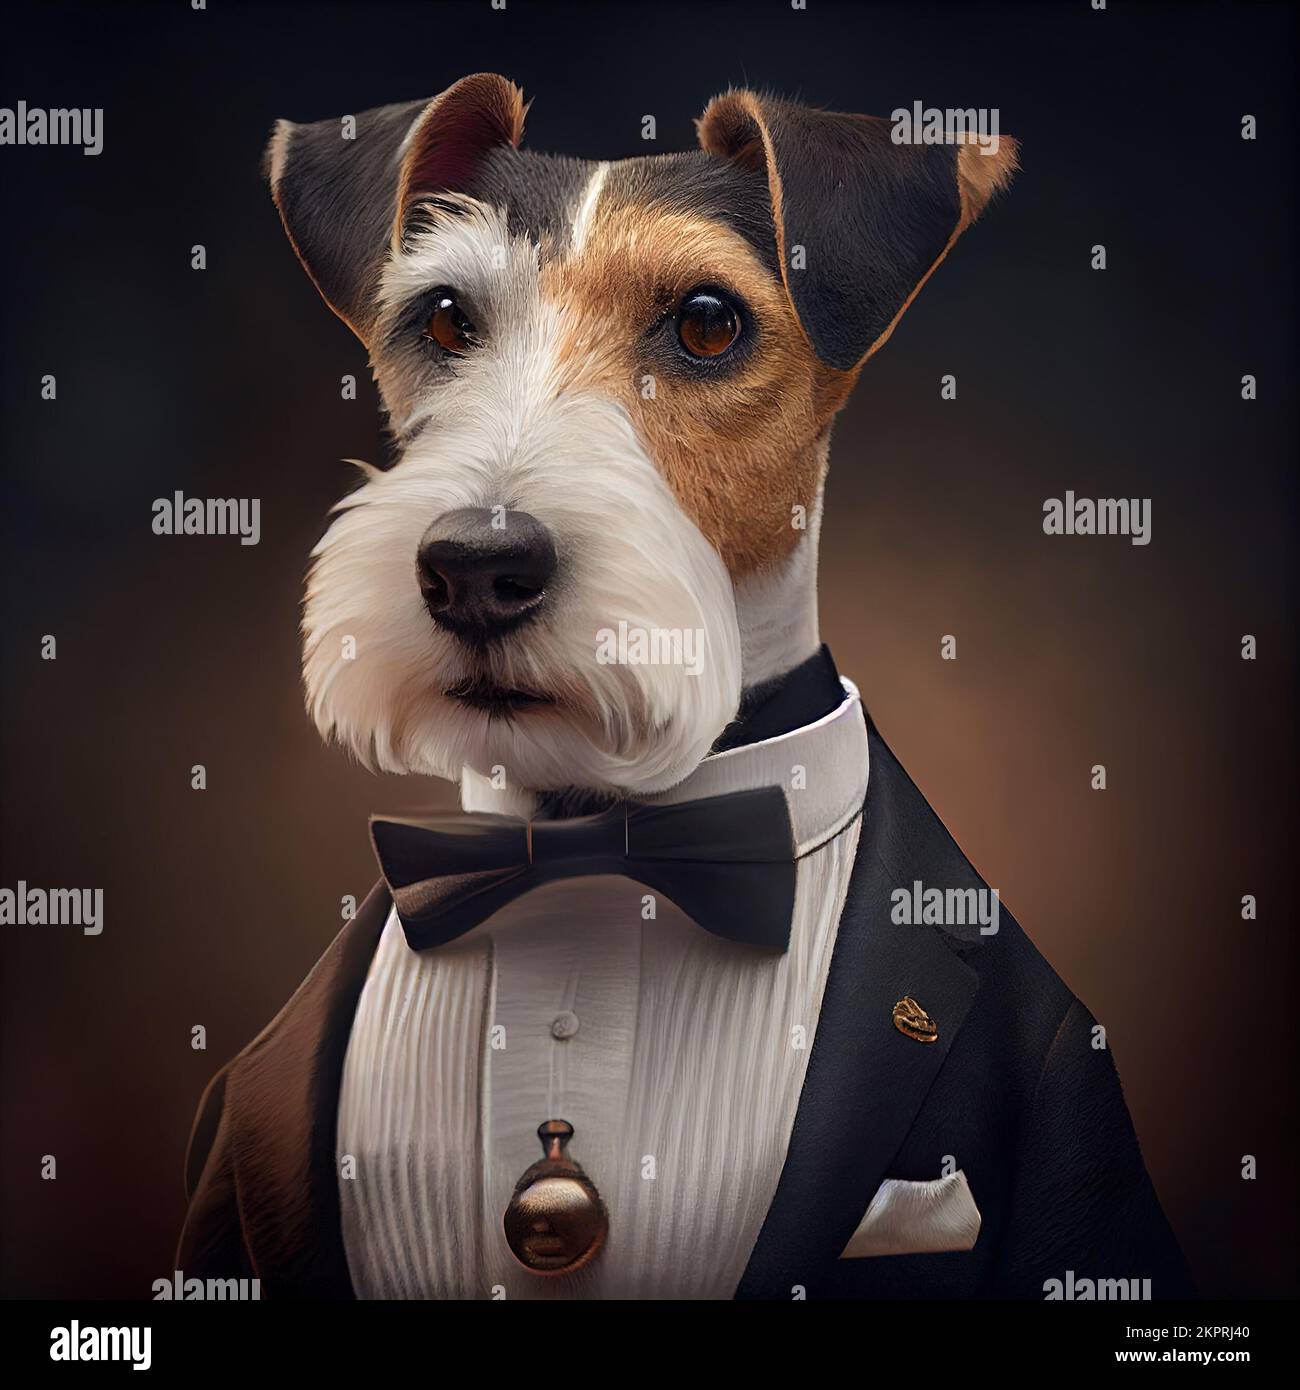 Estudio antropomórfico de un lindo perro de Fox Terrier en un traje. Ilustración generada digitalmente. Foto de stock